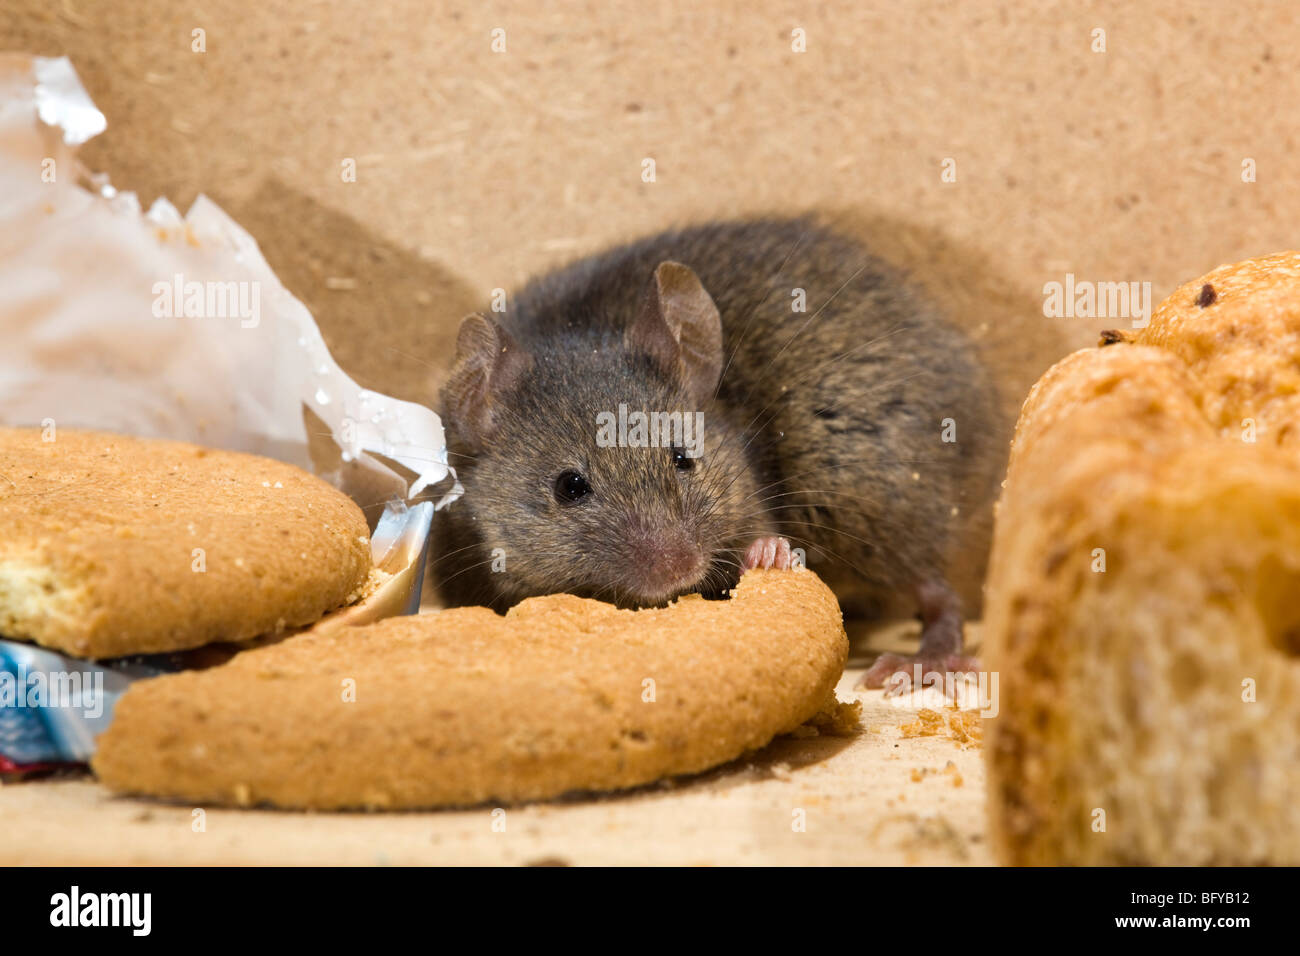 House mouse, Mus musculus, manger un biscuit Banque D'Images